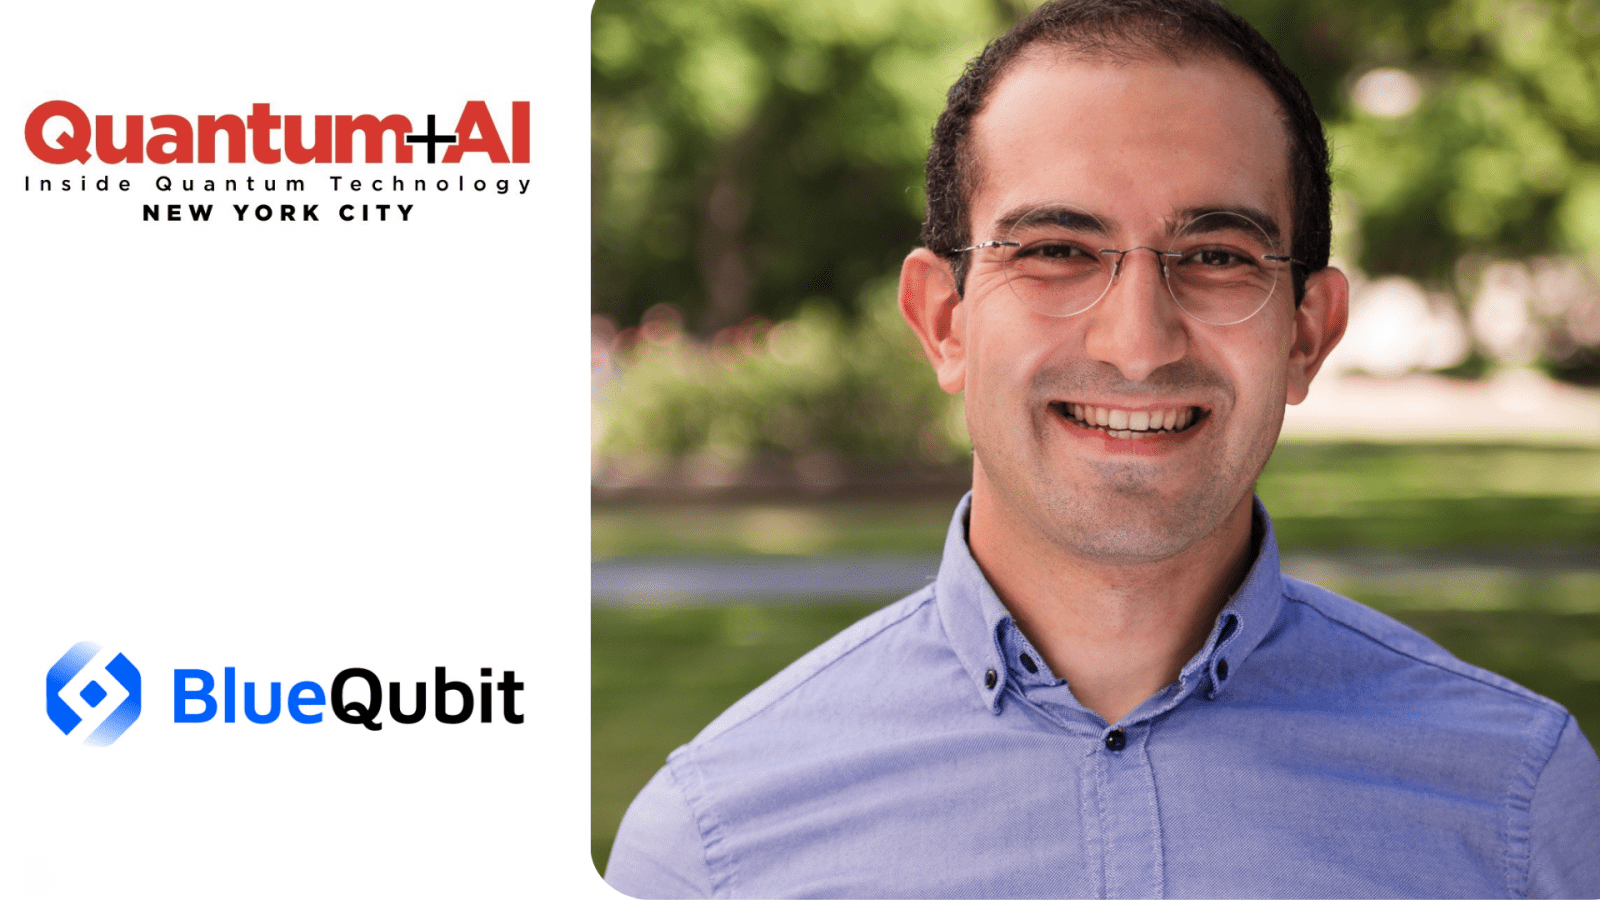 Грант Гарибян, генеральный директор и соучредитель BlueQubit, станет спикером конференции IQT Quantum plus AI в 2024 году в Нью-Йорке.